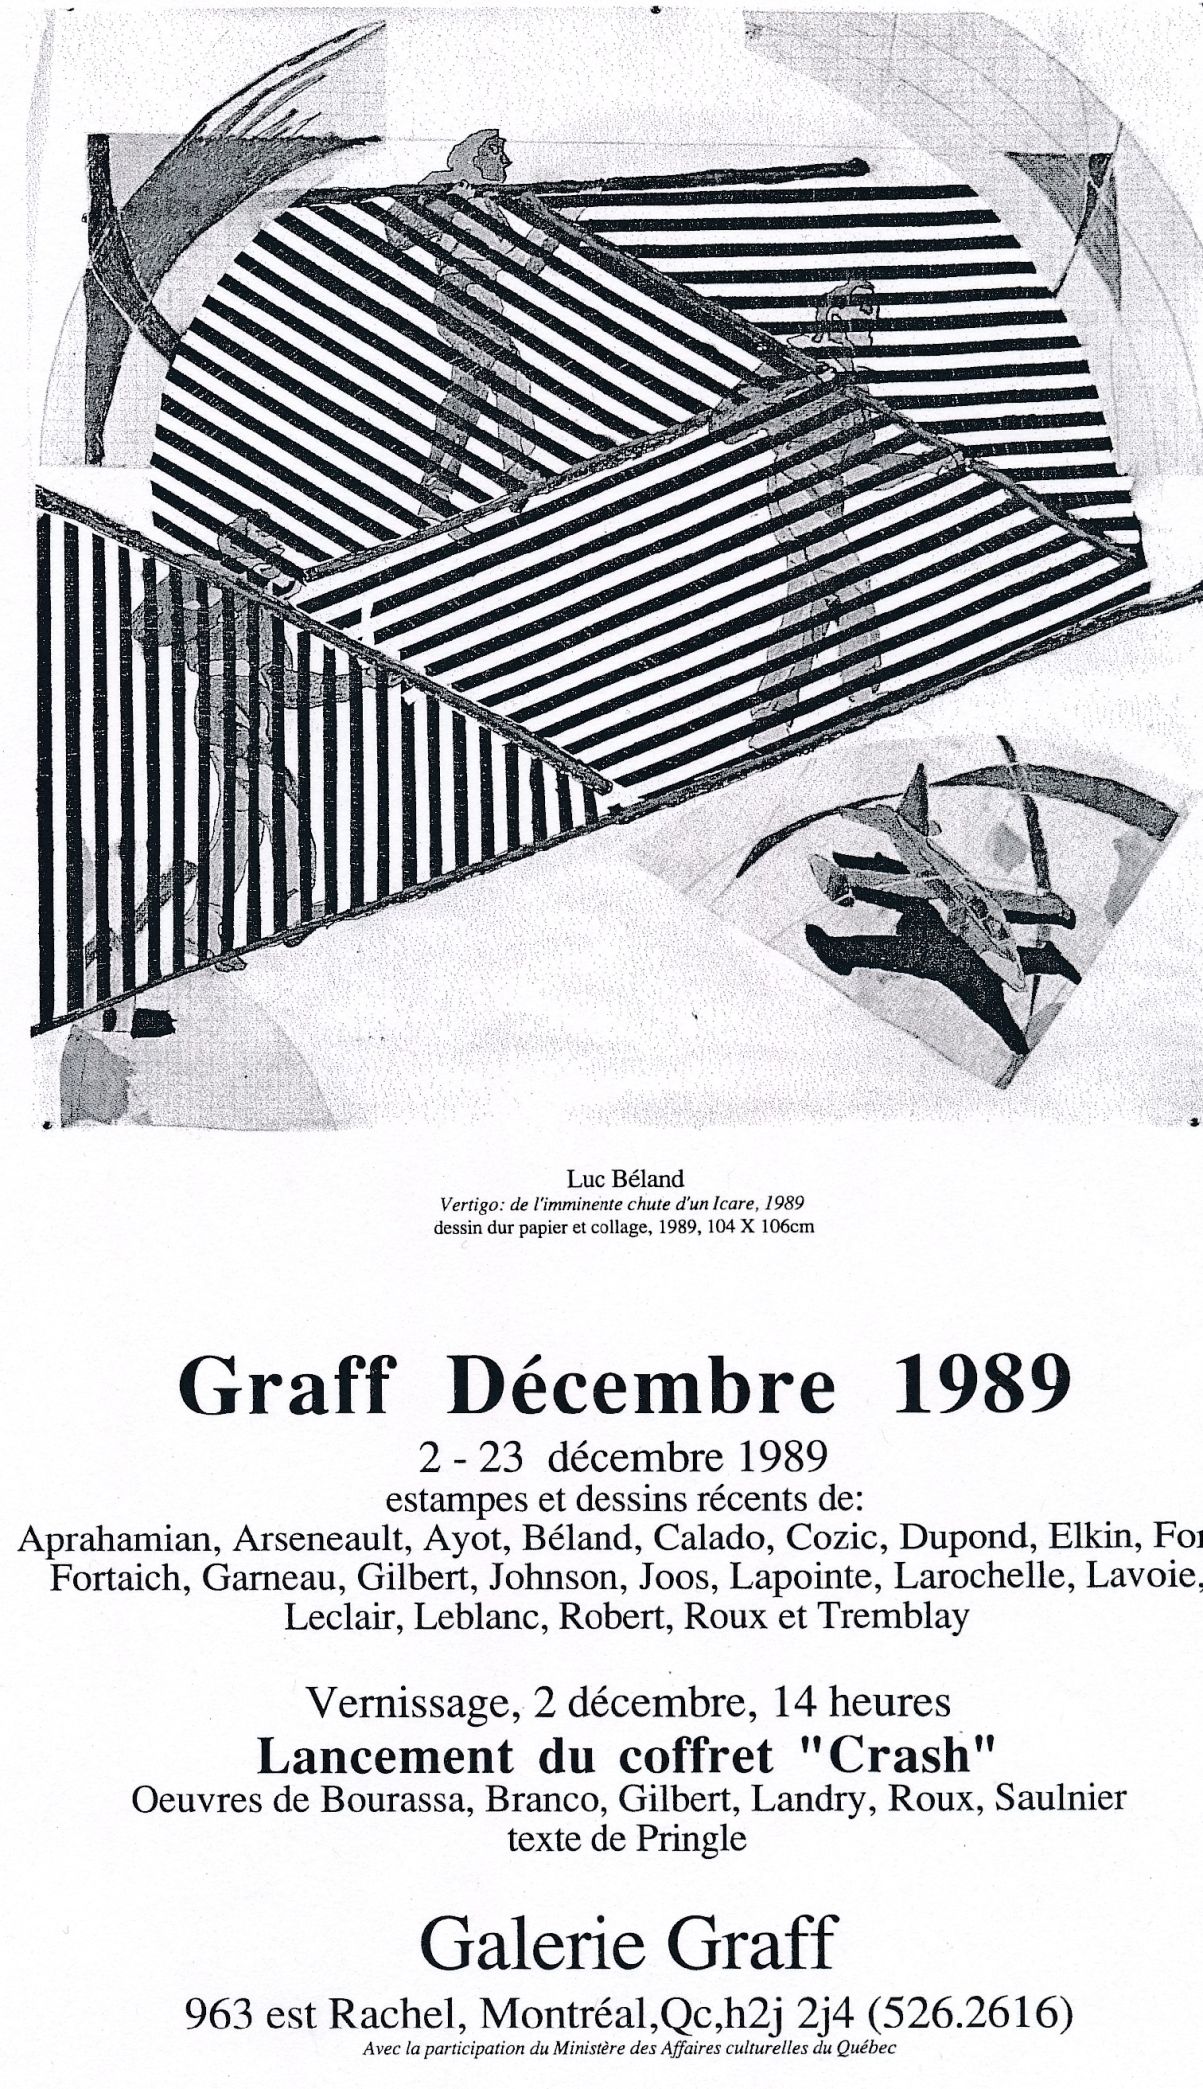 Carton d’invitation de l’exposition Graff. Décembre 1989, Galerie Graff, Montréal, 1989.